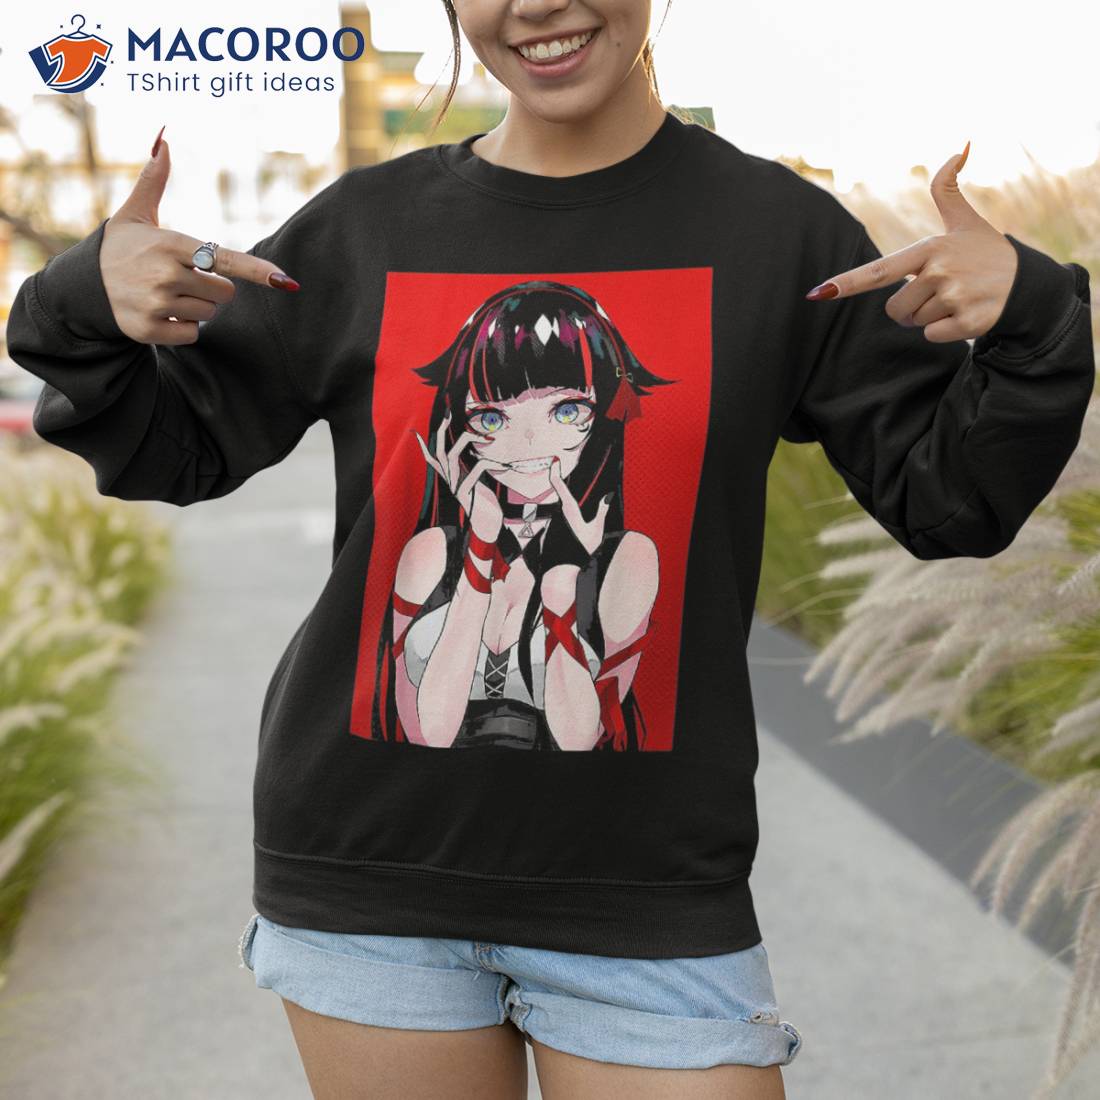 Buy Blushing Anime Girls Romantic and Cute TShirts 15 Designs  TShirts   Tank Tops